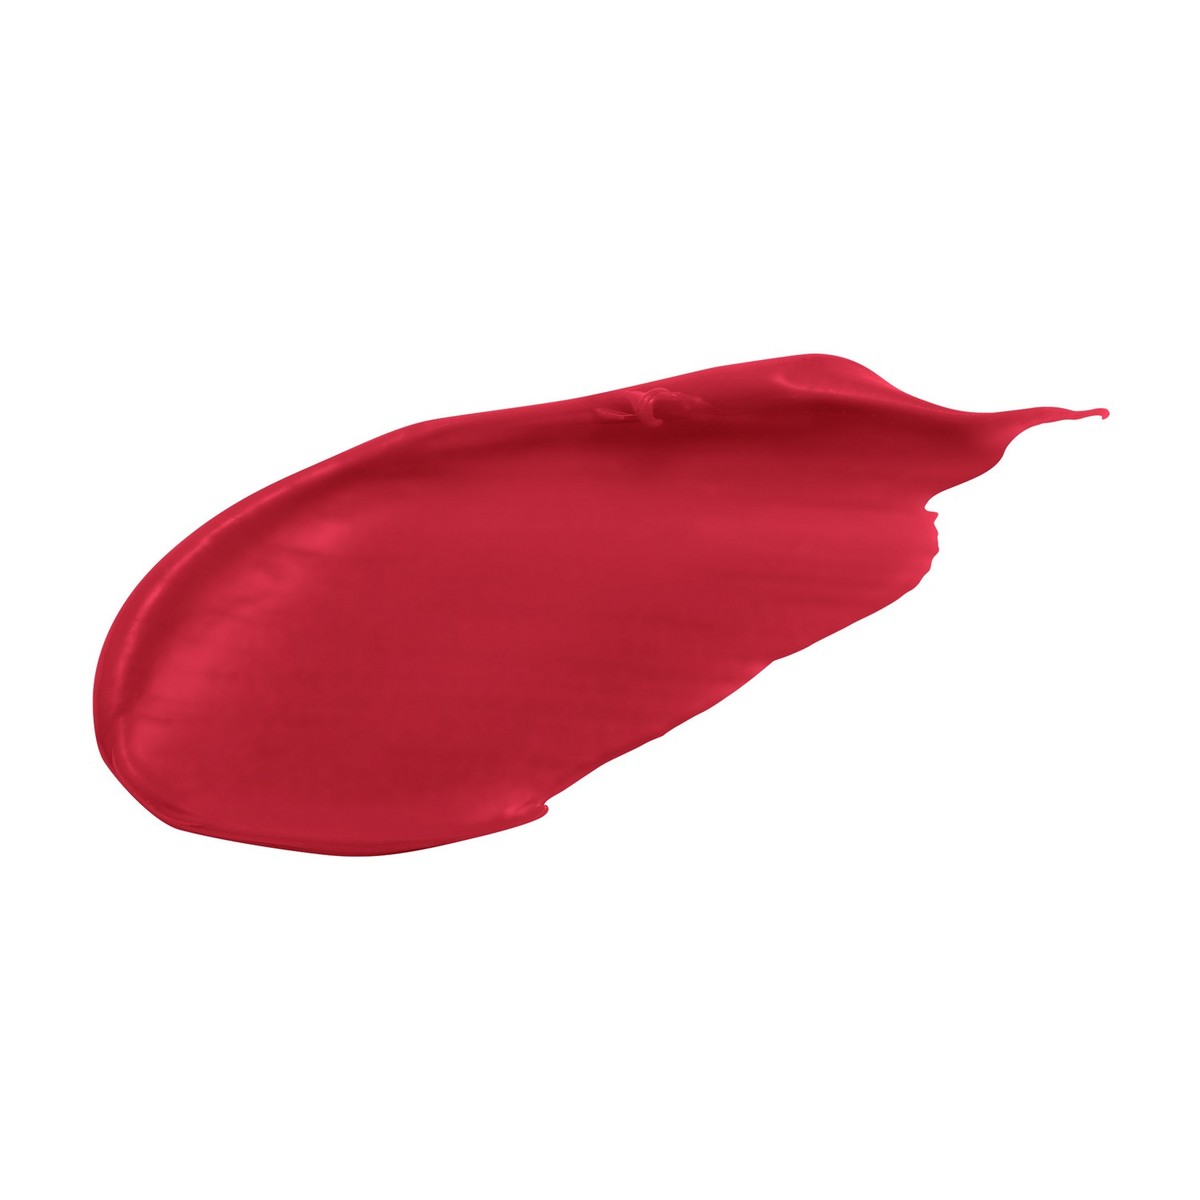 Max Factor Colour Elixir Lipstick 715 Ruby Tuesday 1pc